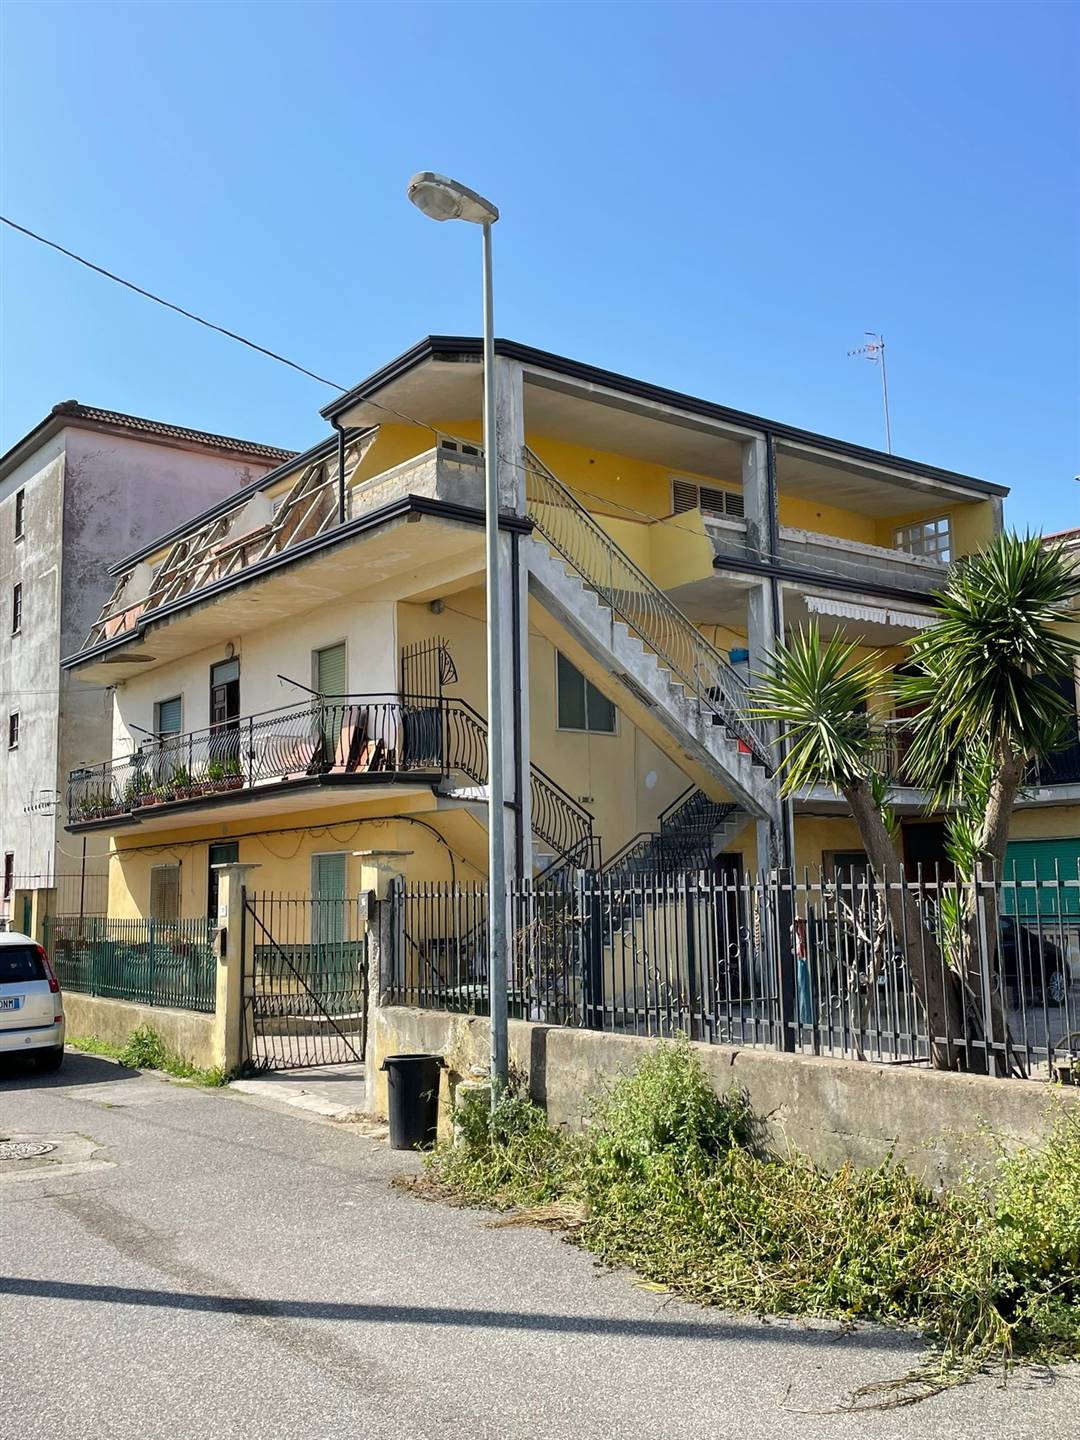 Palazzo / Stabile in vendita a Castel Volturno, 15 locali, zona Località: CASTEL VOLTURNO - SCATOZZA, prezzo € 160.000 | PortaleAgenzieImmobiliari.it